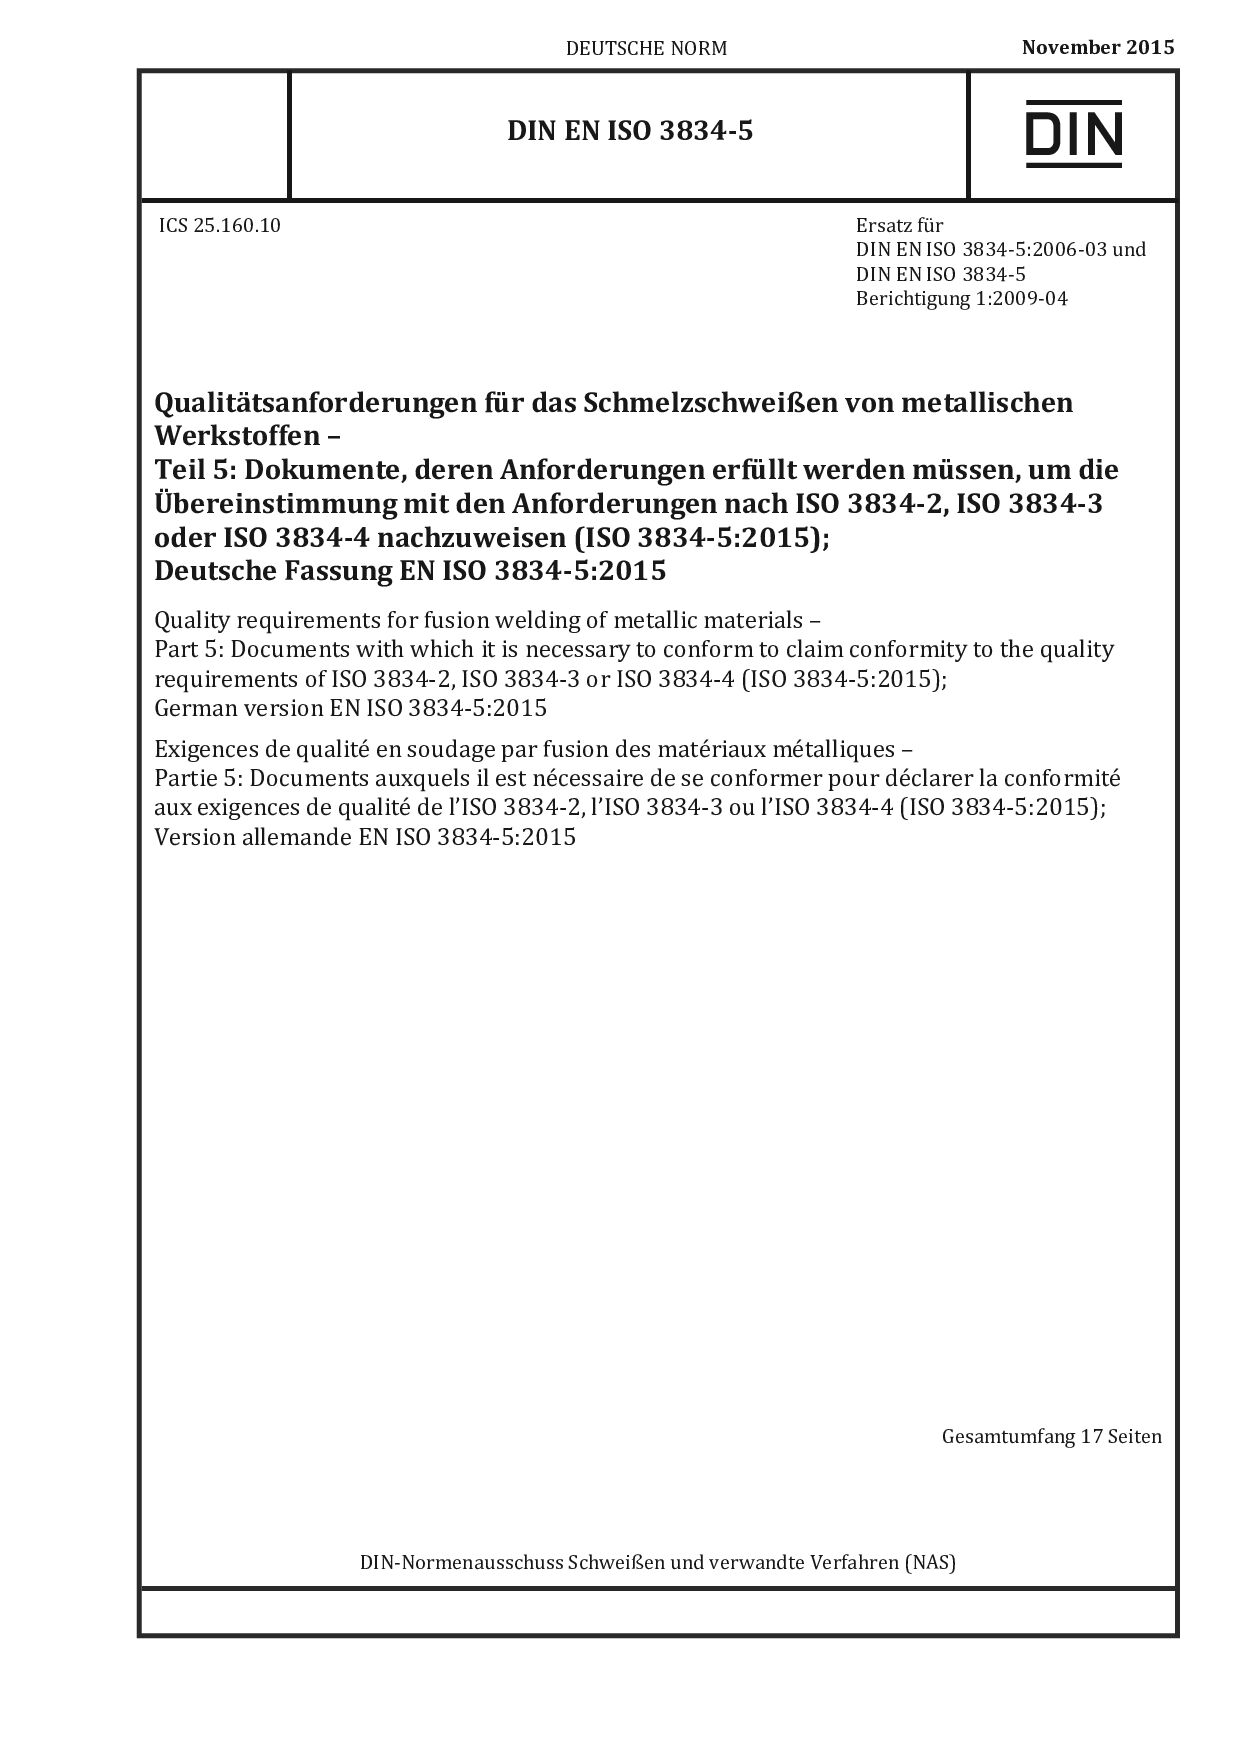 DIN EN ISO 3834-5:2015